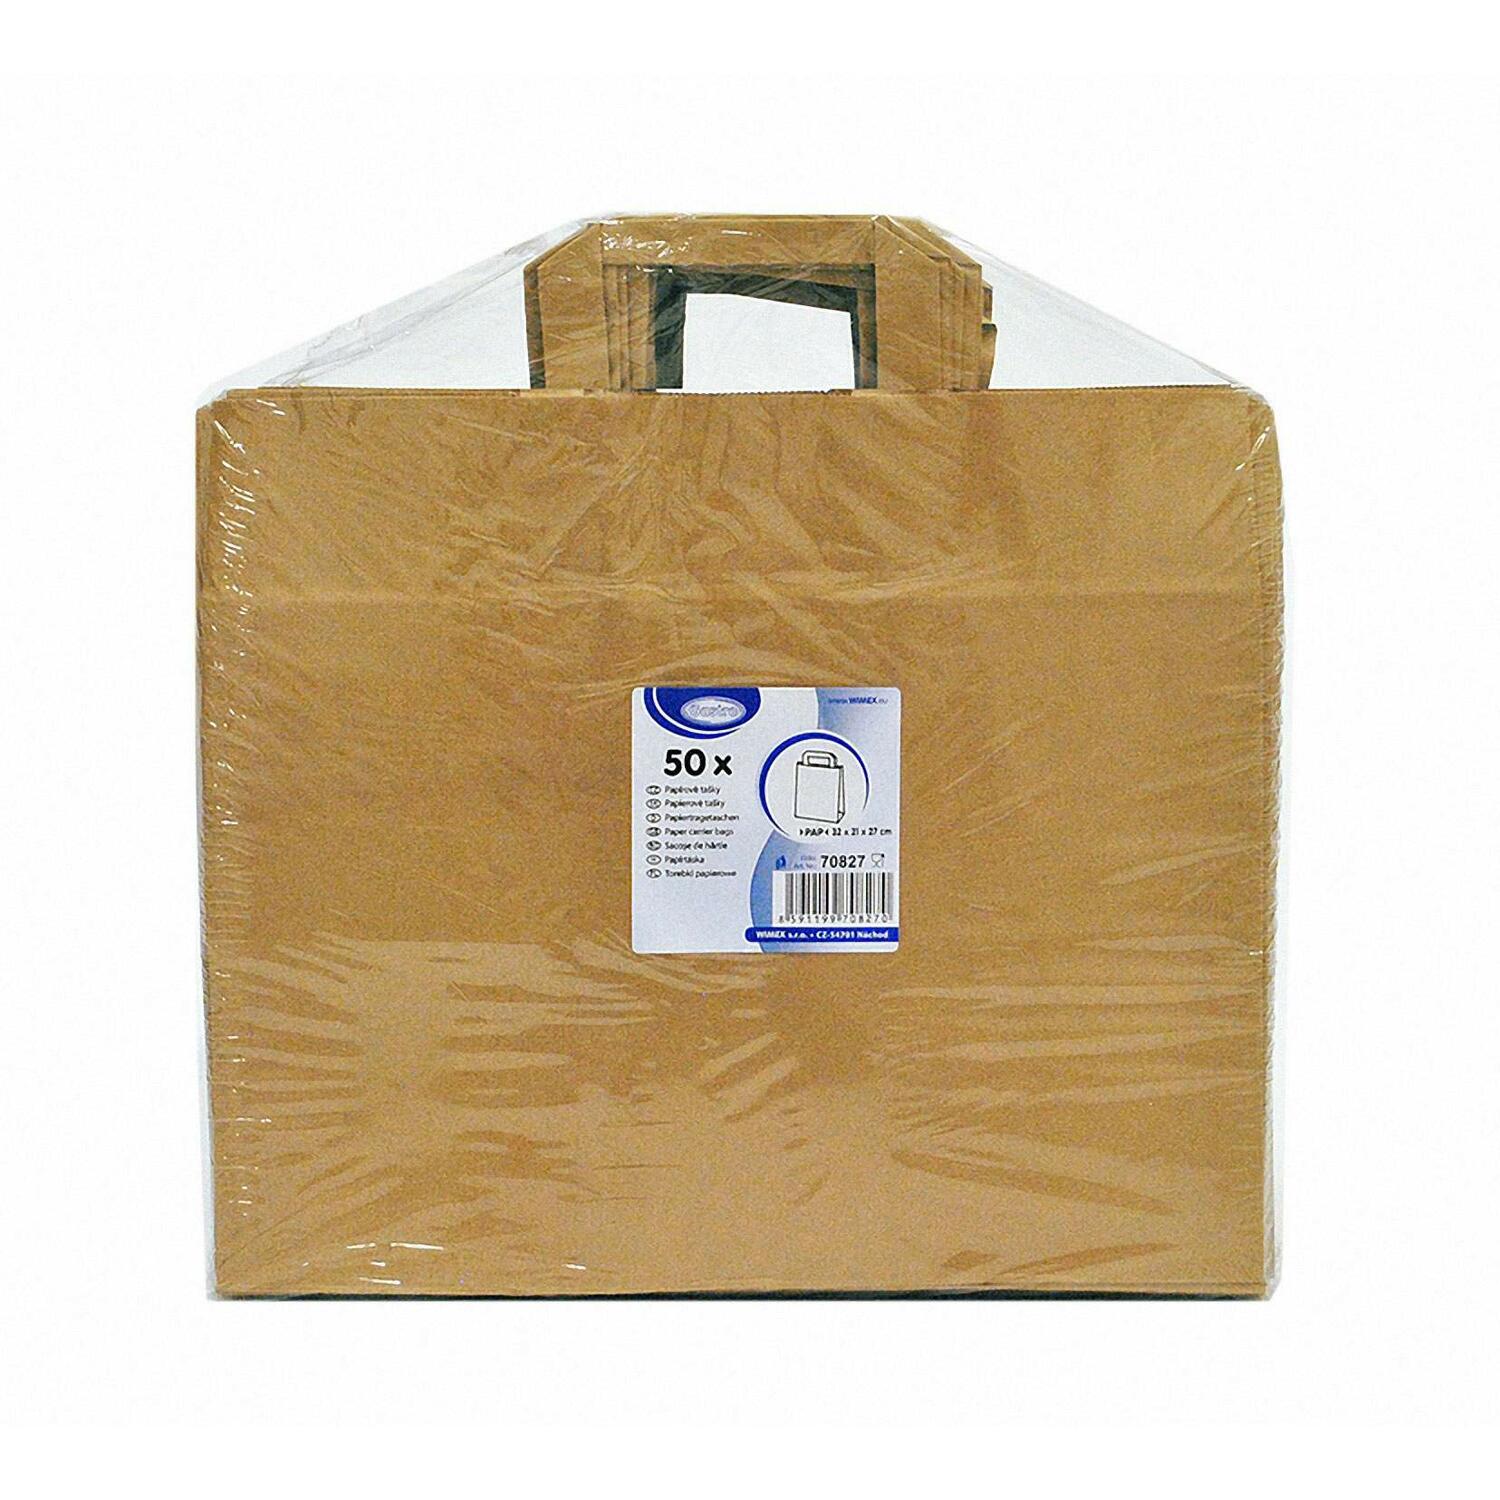 GASTRO Papiertragetaschen 33 x 32 x 21 cm mit EAN-Code braun,  50 Stk.